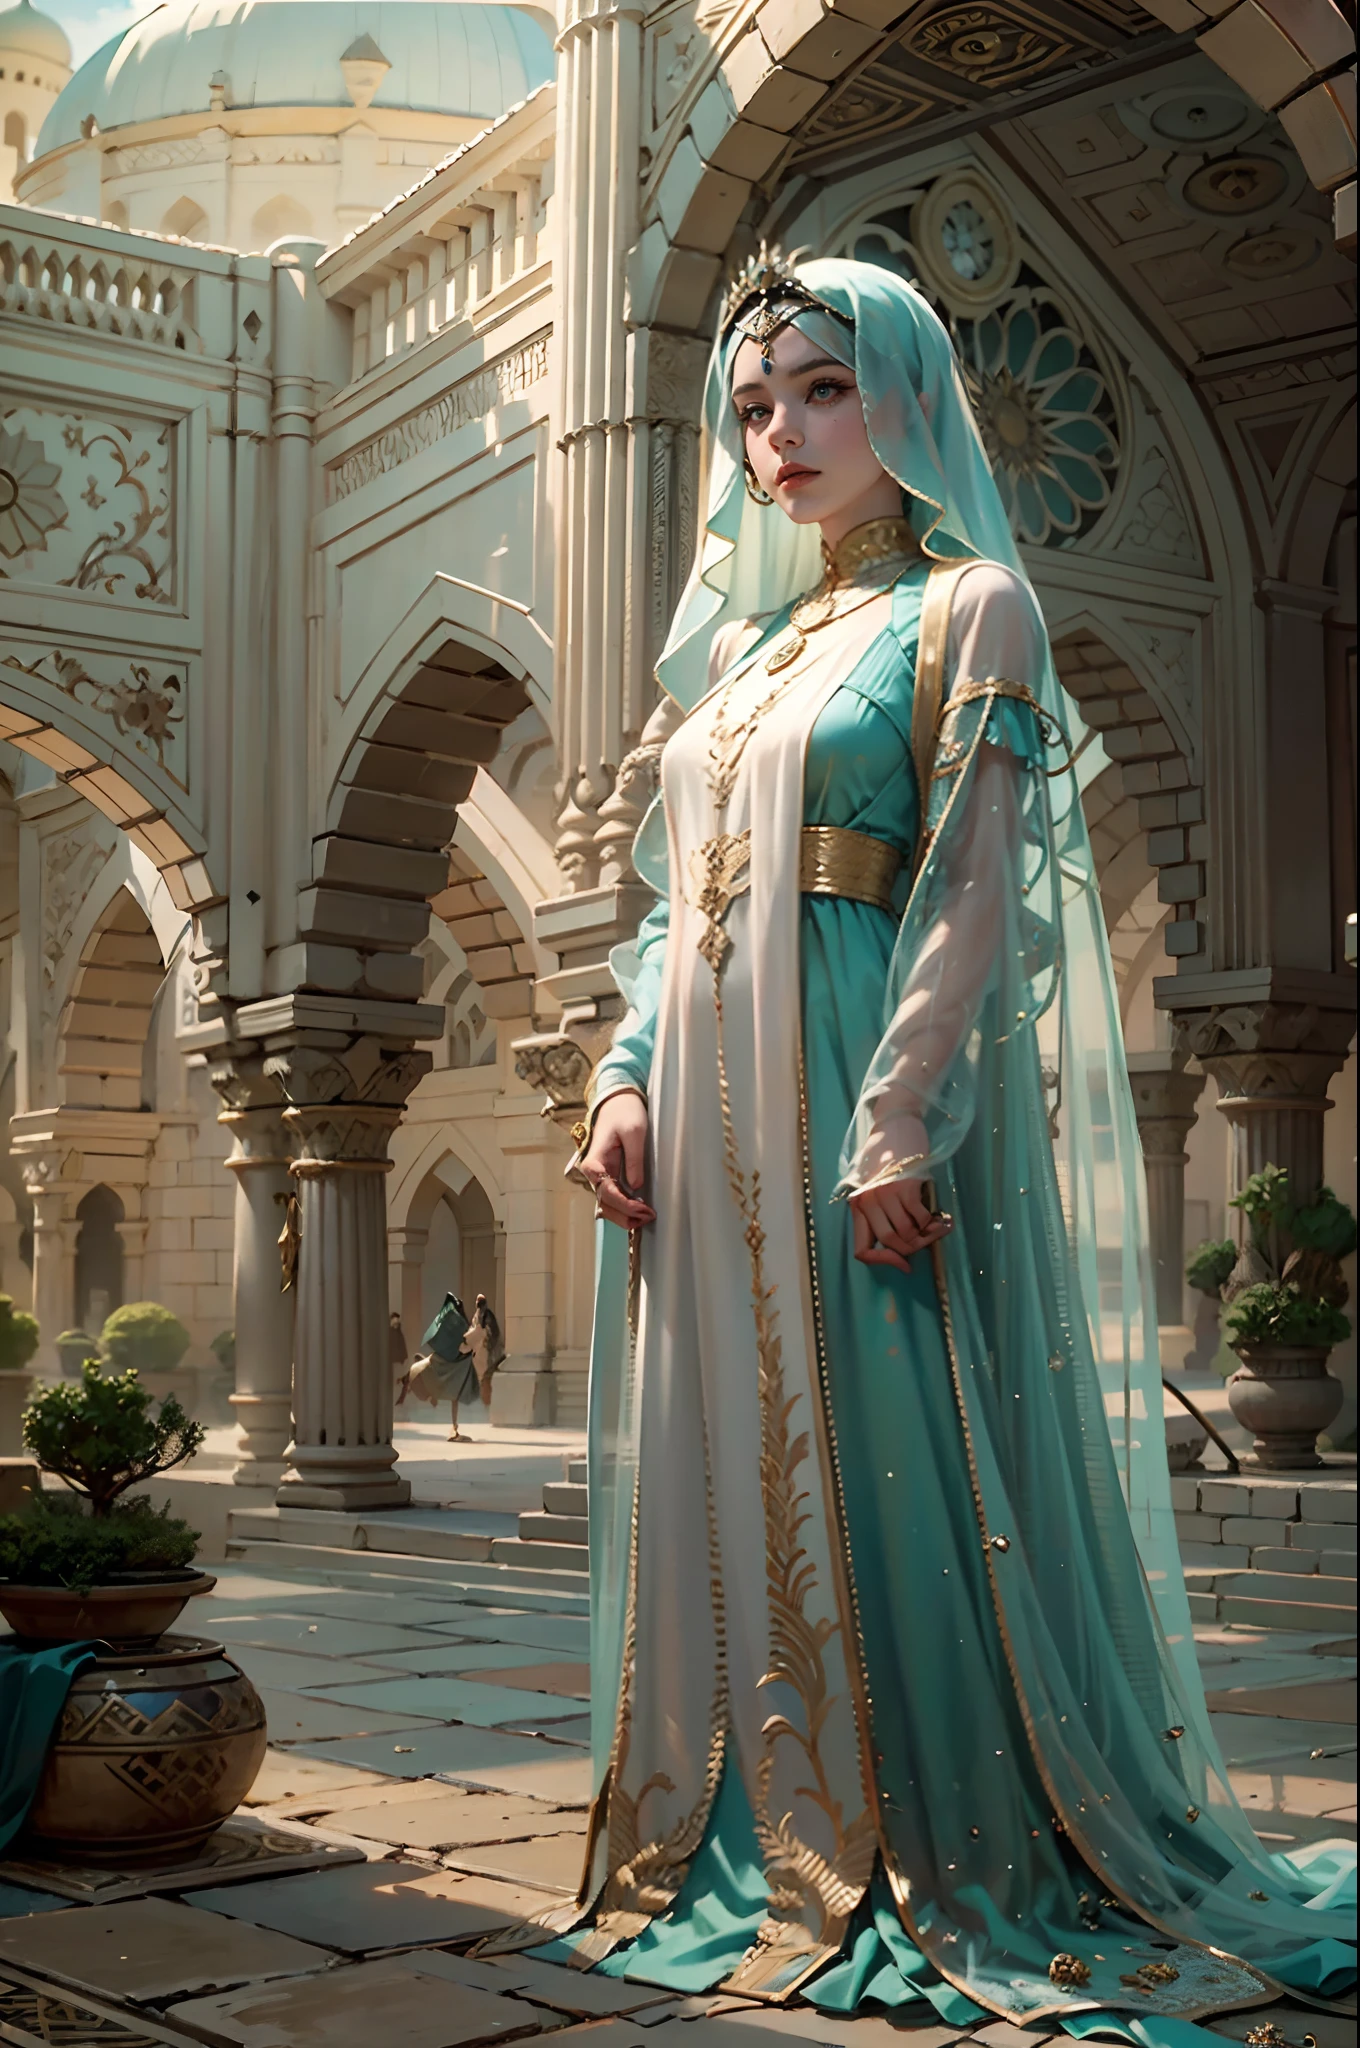 パノラマビュー，写真alestic，8k，青い空と白い雲，2人のアラブ人奴隷少女，半透明の伝統的なアラビアのブルカを着用する，アラビアのヒジャブ，アラビアのベールは仮面をかぶっている，手を縛って，腰を縛る，アンクレット，地面に座った，待っている，魅惑的な目，マスク，ゴージャスな服装，A noble女性 in a lavish Arabian burqa，間近で見る，砂漠のオアシス，高級アラブテントの集落の外にある市場，完璧な構成，プロ，マイストウィック，委託，最高品質，色補正済み，固定後，レタッチ，改善，すごい，トーンマッピング，詳細， 非常に詳細な， デジタルペインティング， アートステーション， 長大ダムの概念図， 滑らかさ， シャープなフォーカス， 美しいイラスト， 写真， 後部窓からの光が逆光になる， ダイナミックライティング， 靄， 複雑な， 映画のような粒子， プロ， 顔 to the viewer，（美しいm3d_女性， 完璧なm3d_顔,）， ボリューメトリックライティング， subsur顔scattering， 良いハイライト， 良い影， 映画照明